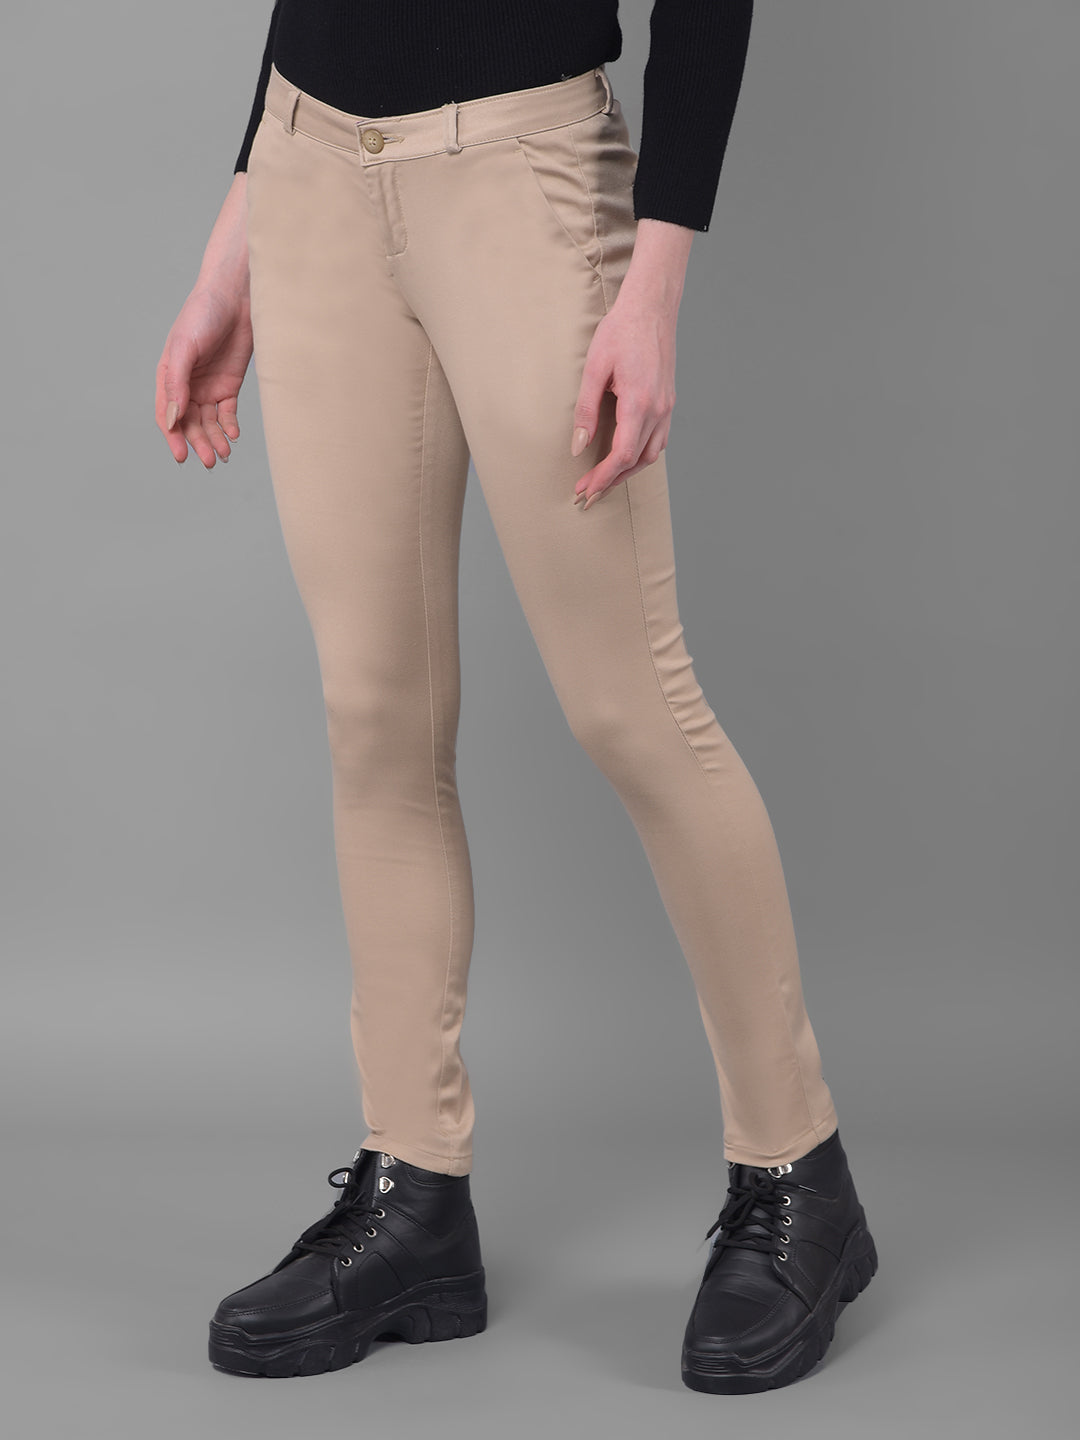 Beige Trousers-Women Trousers-Crimsoune Club